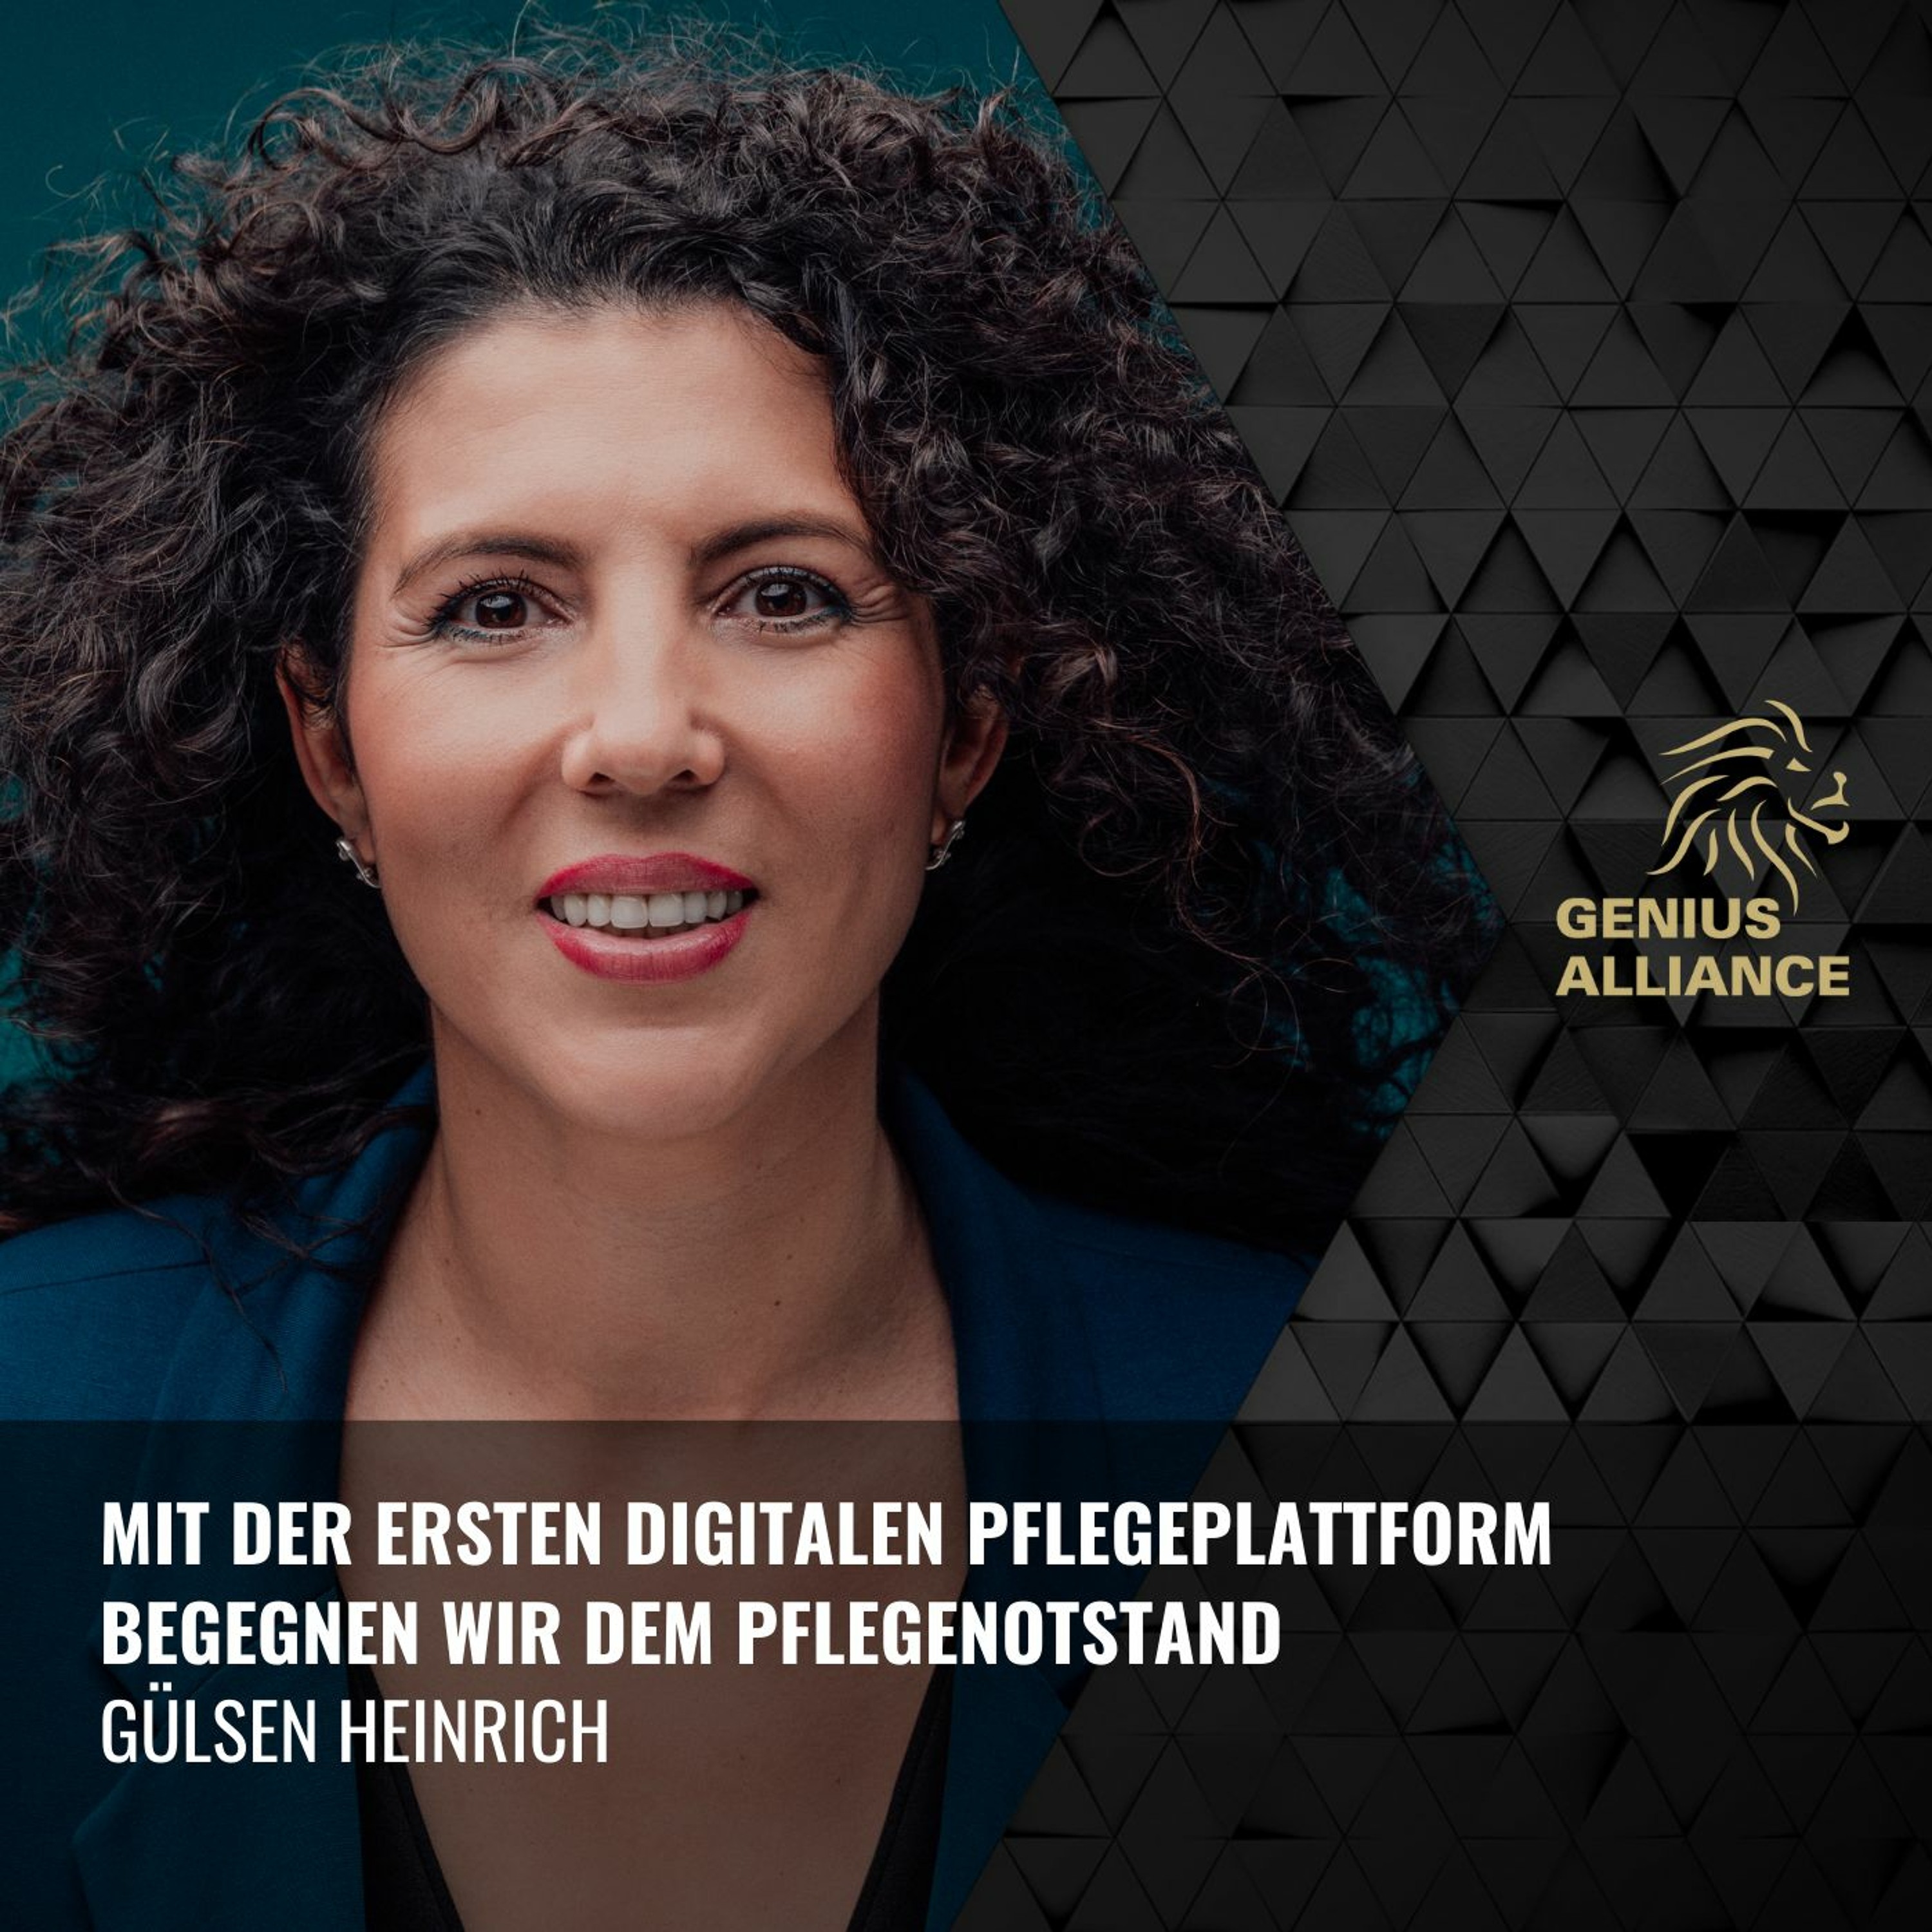 Gülsen Heinrich | Mit der ersten digitalen Pflegeplattform, begegnen wir dem Pflegenotstand